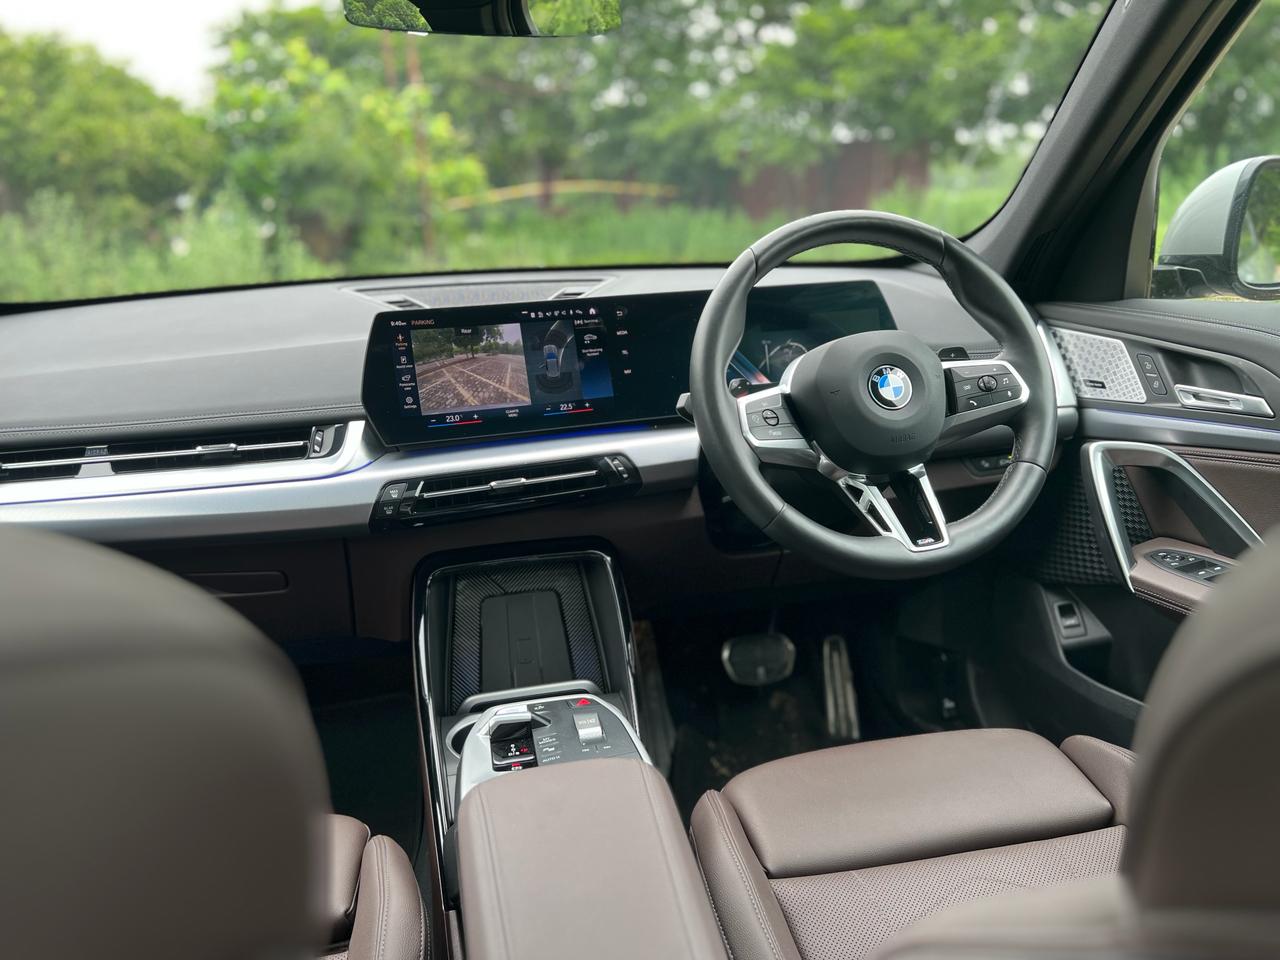 BMW X1 Review: देखिए बीएमडब्ल्यू एक्स1 का लॉन्ग टर्म रिव्यू, जानिए क्यों है यह सबसे पॉपुलर लग्जरी एसयूवी?